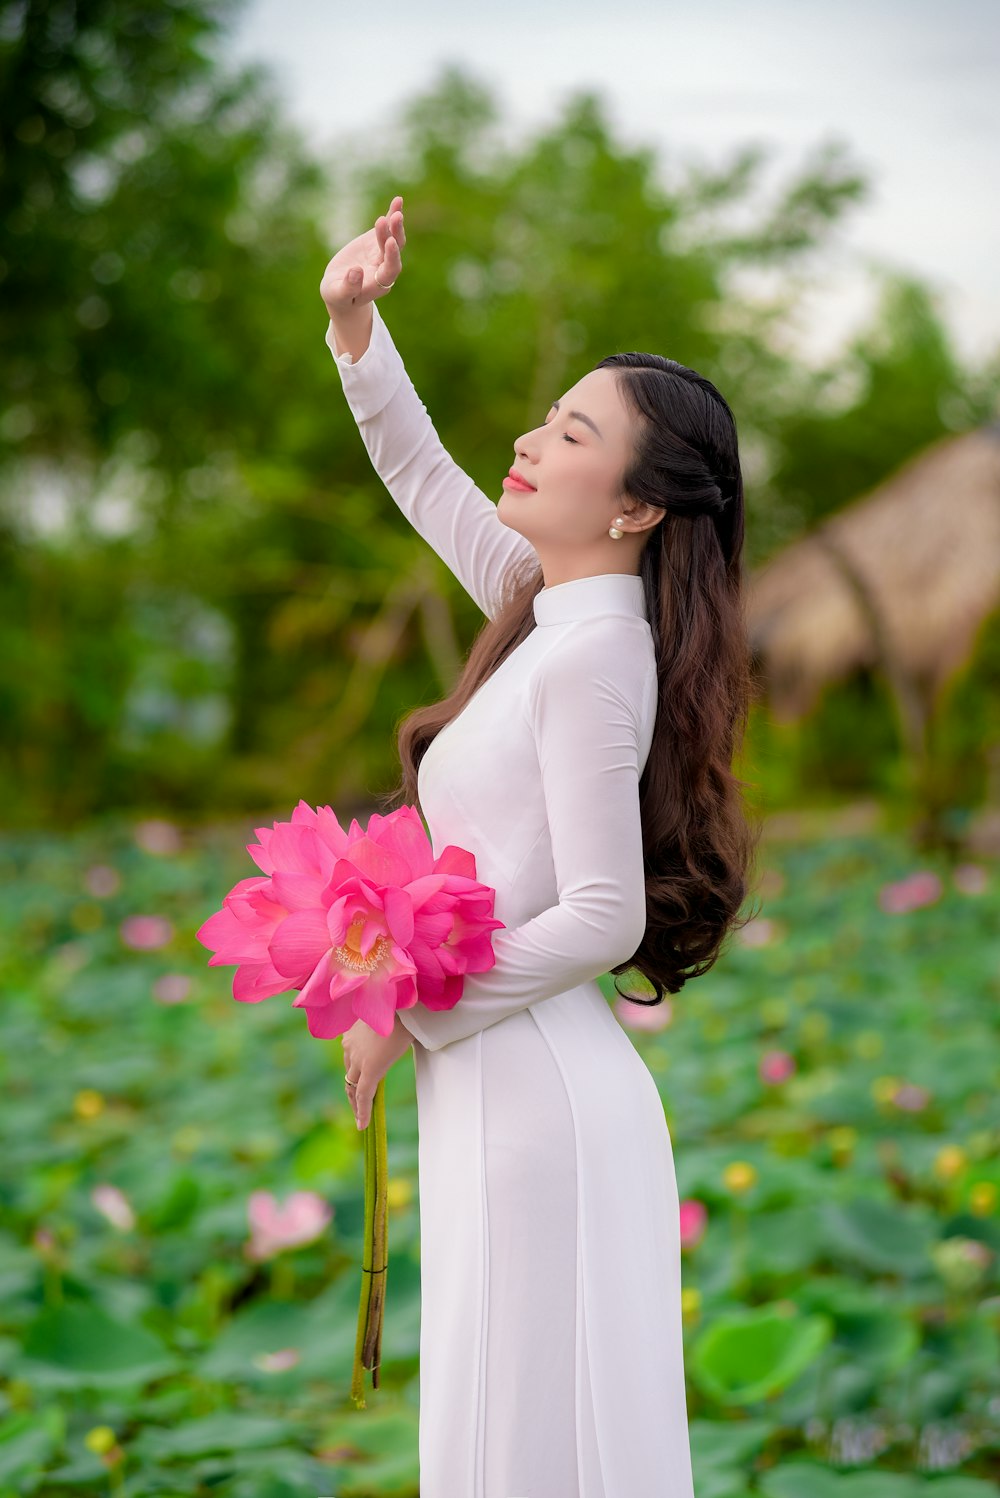 Femme en robe blanche à manches longues tenant des fleurs roses